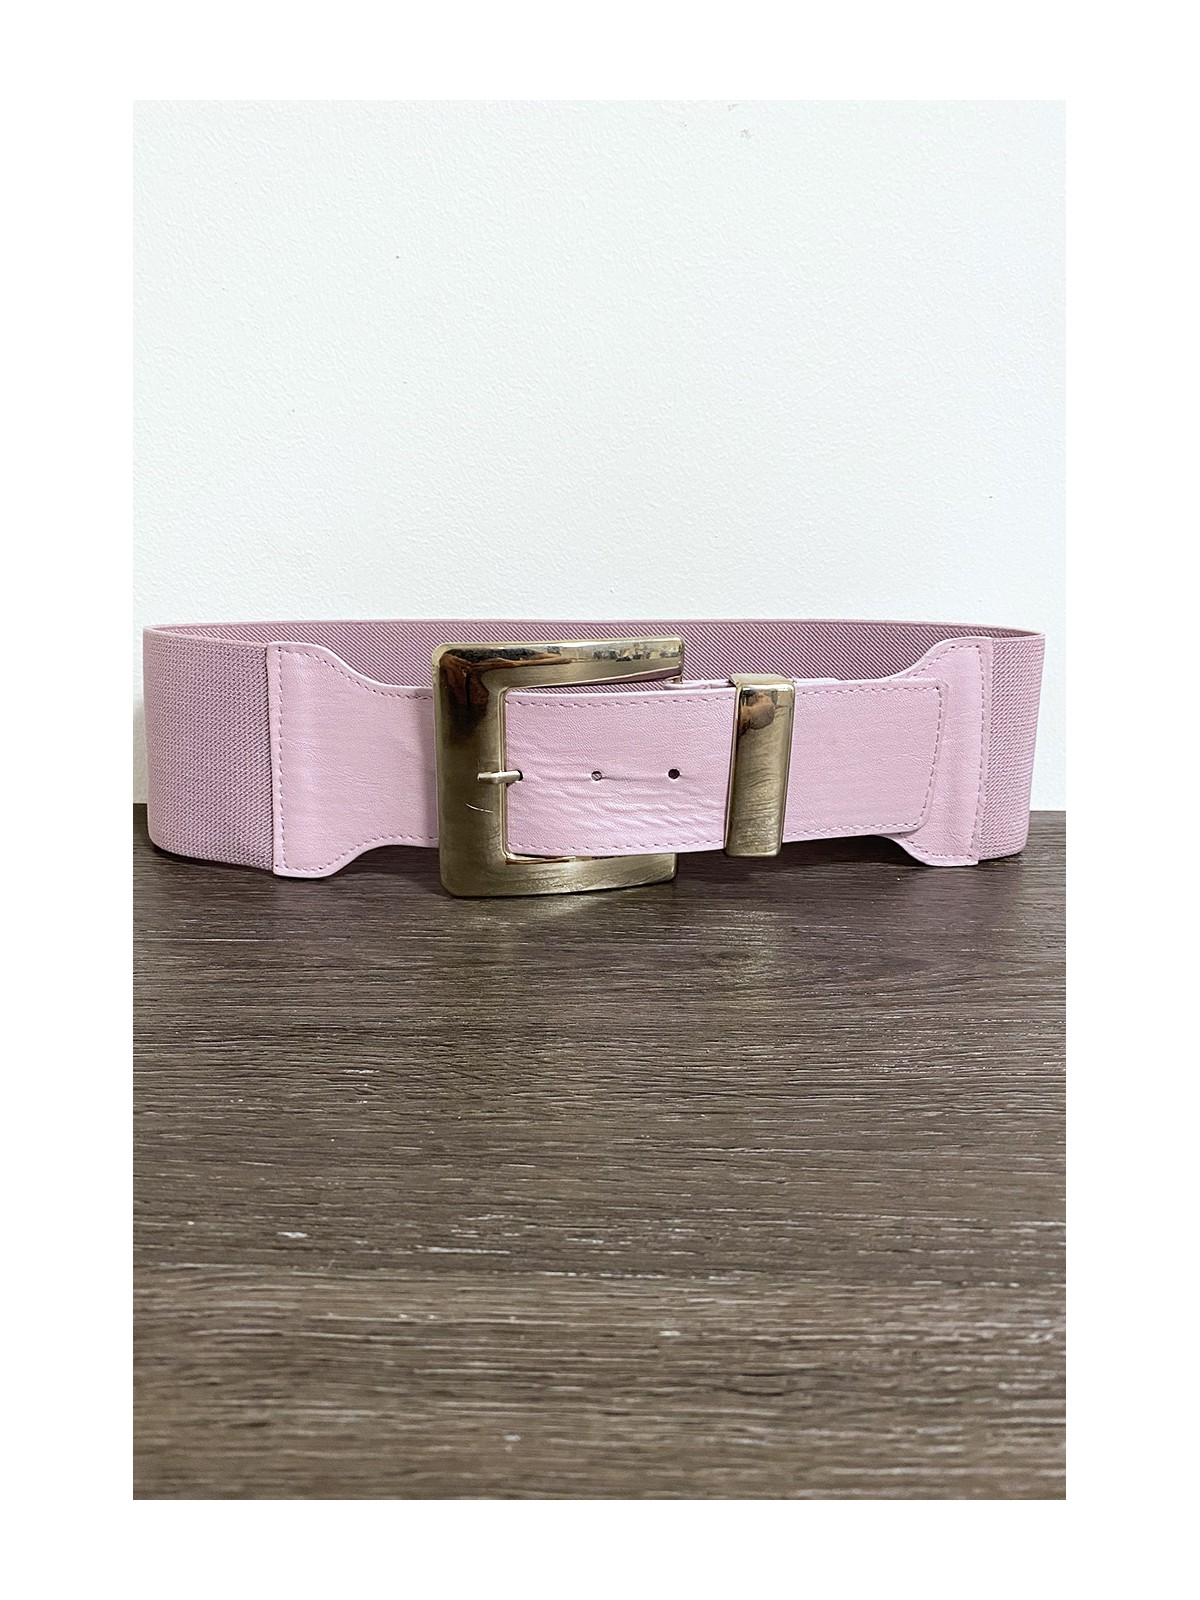 Grosse ceinture lila avec boucle argenté et élastique à la taille - 1